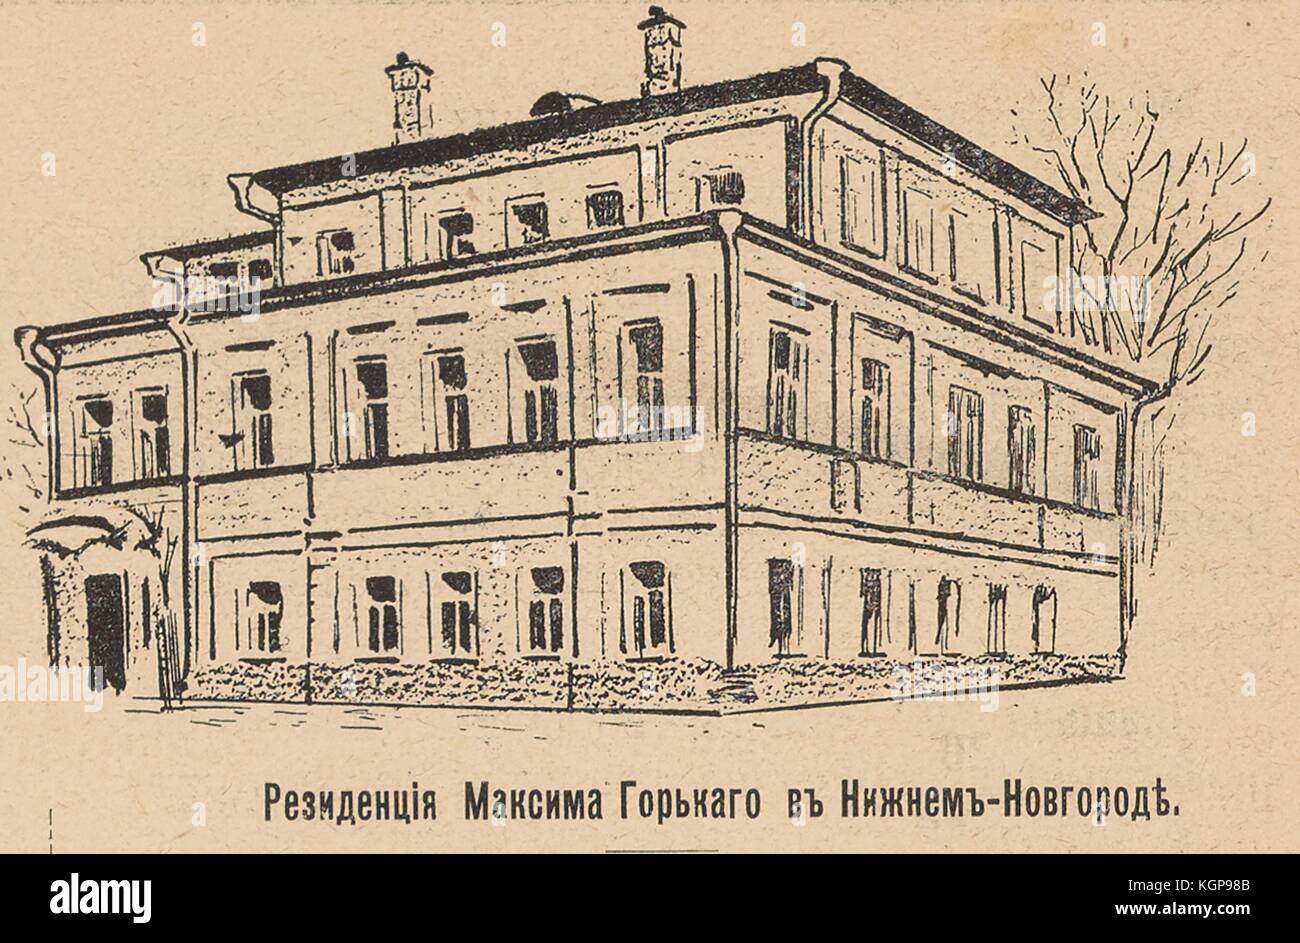 Illustration aus dem russischen satirischen Magazin Bomby (Bombs), das ein Wohngebäude darstellt, mit dem Text "Residenz von Maxim Gorky in Nischni Nowgorod", der sich auf einen berühmten russischen Schriftsteller und politischen Aktivisten im frühen 20. Jahrhundert 1905 bezieht. Stockfoto